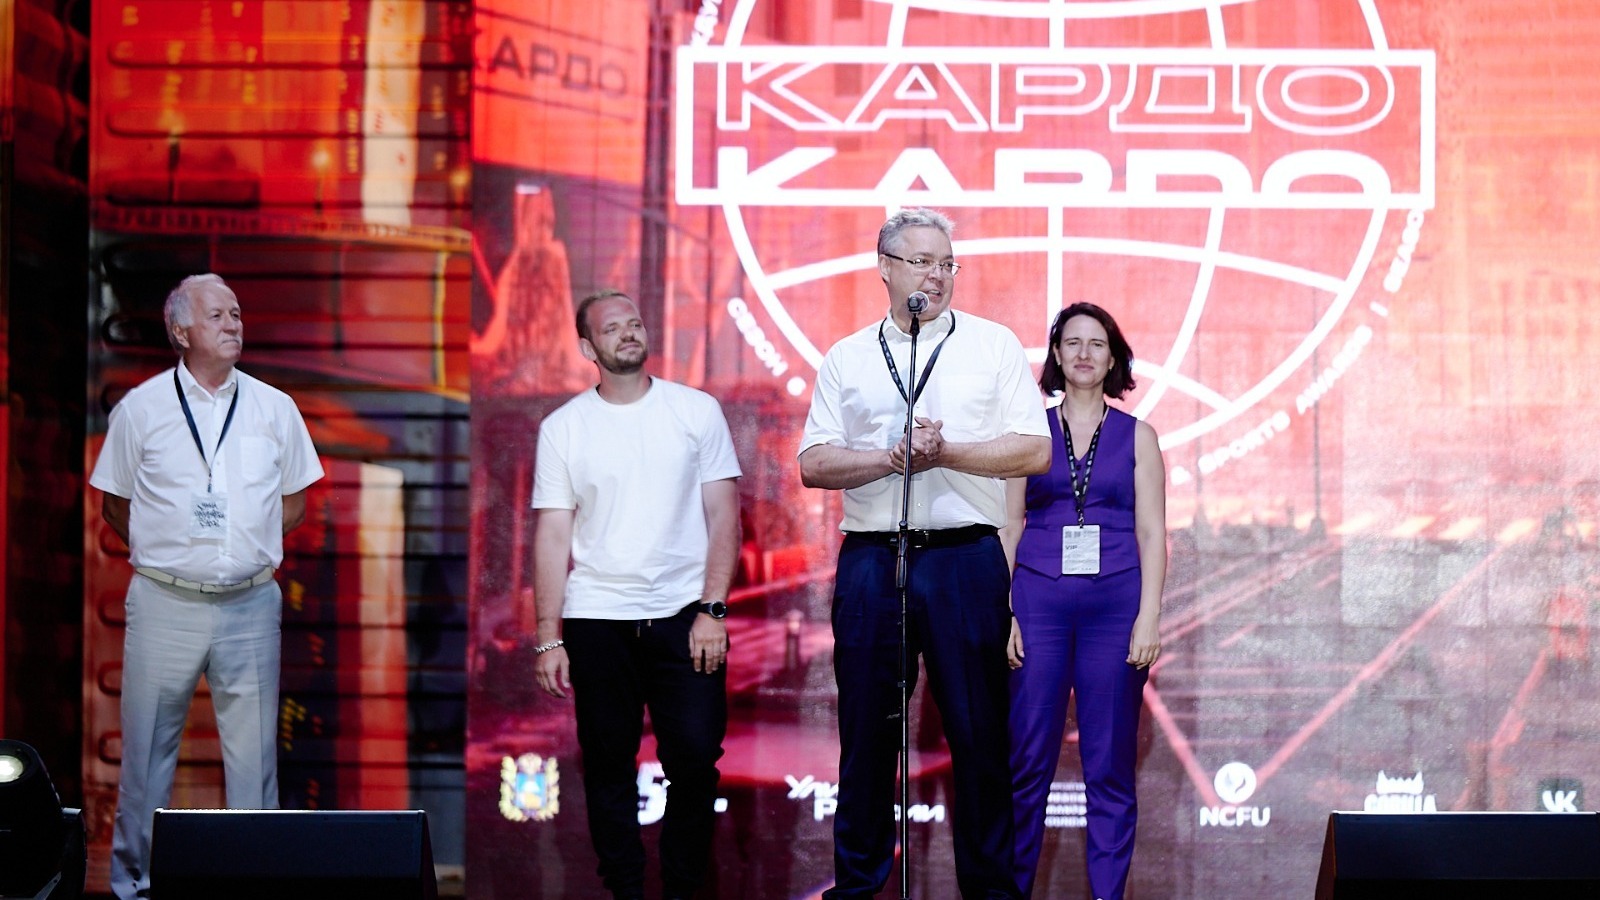 На Ставрополье принимают участников международного конкурса «Кардо»